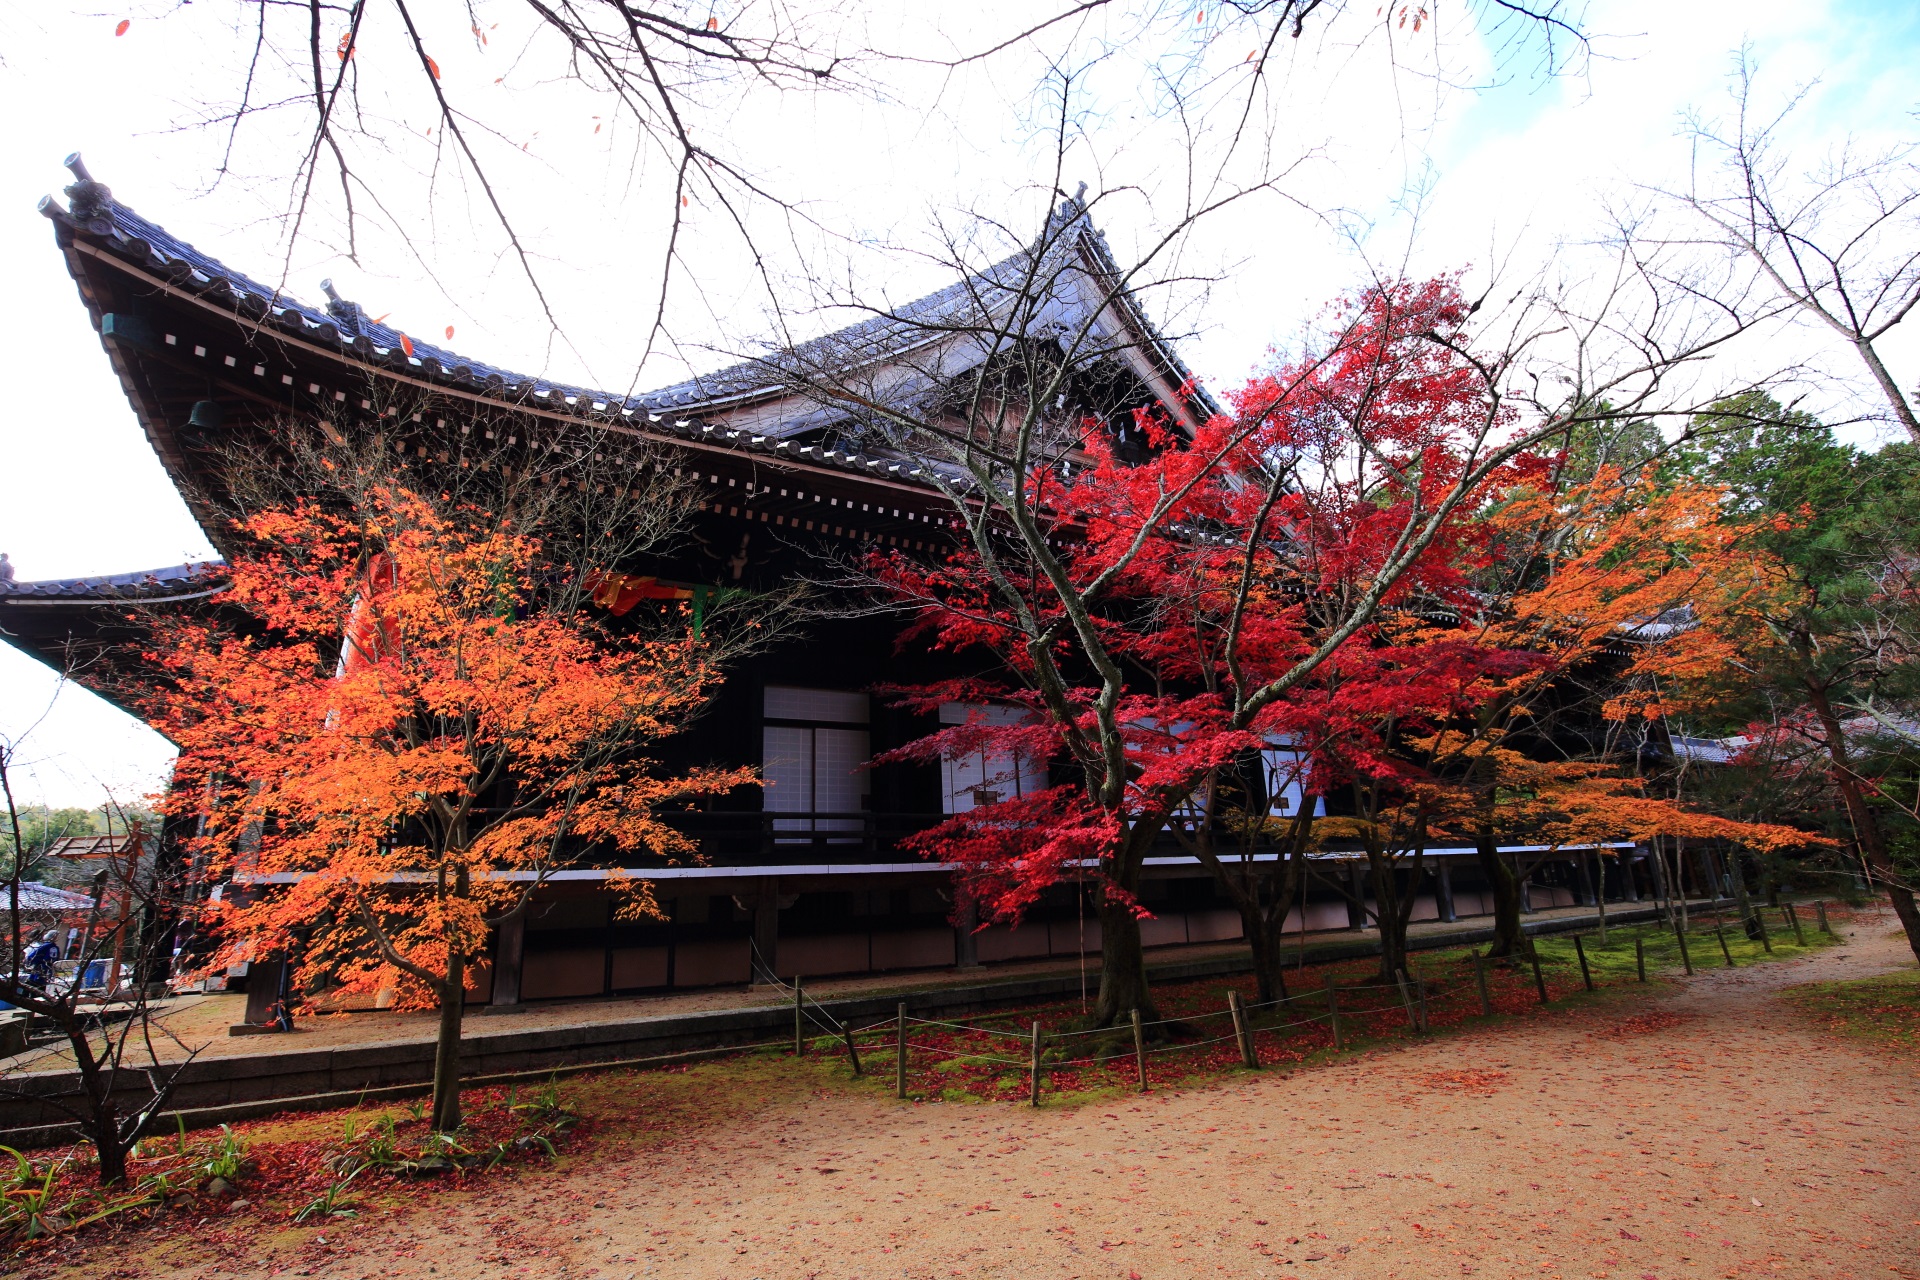 光明寺の本堂と華やぐ多彩な紅葉